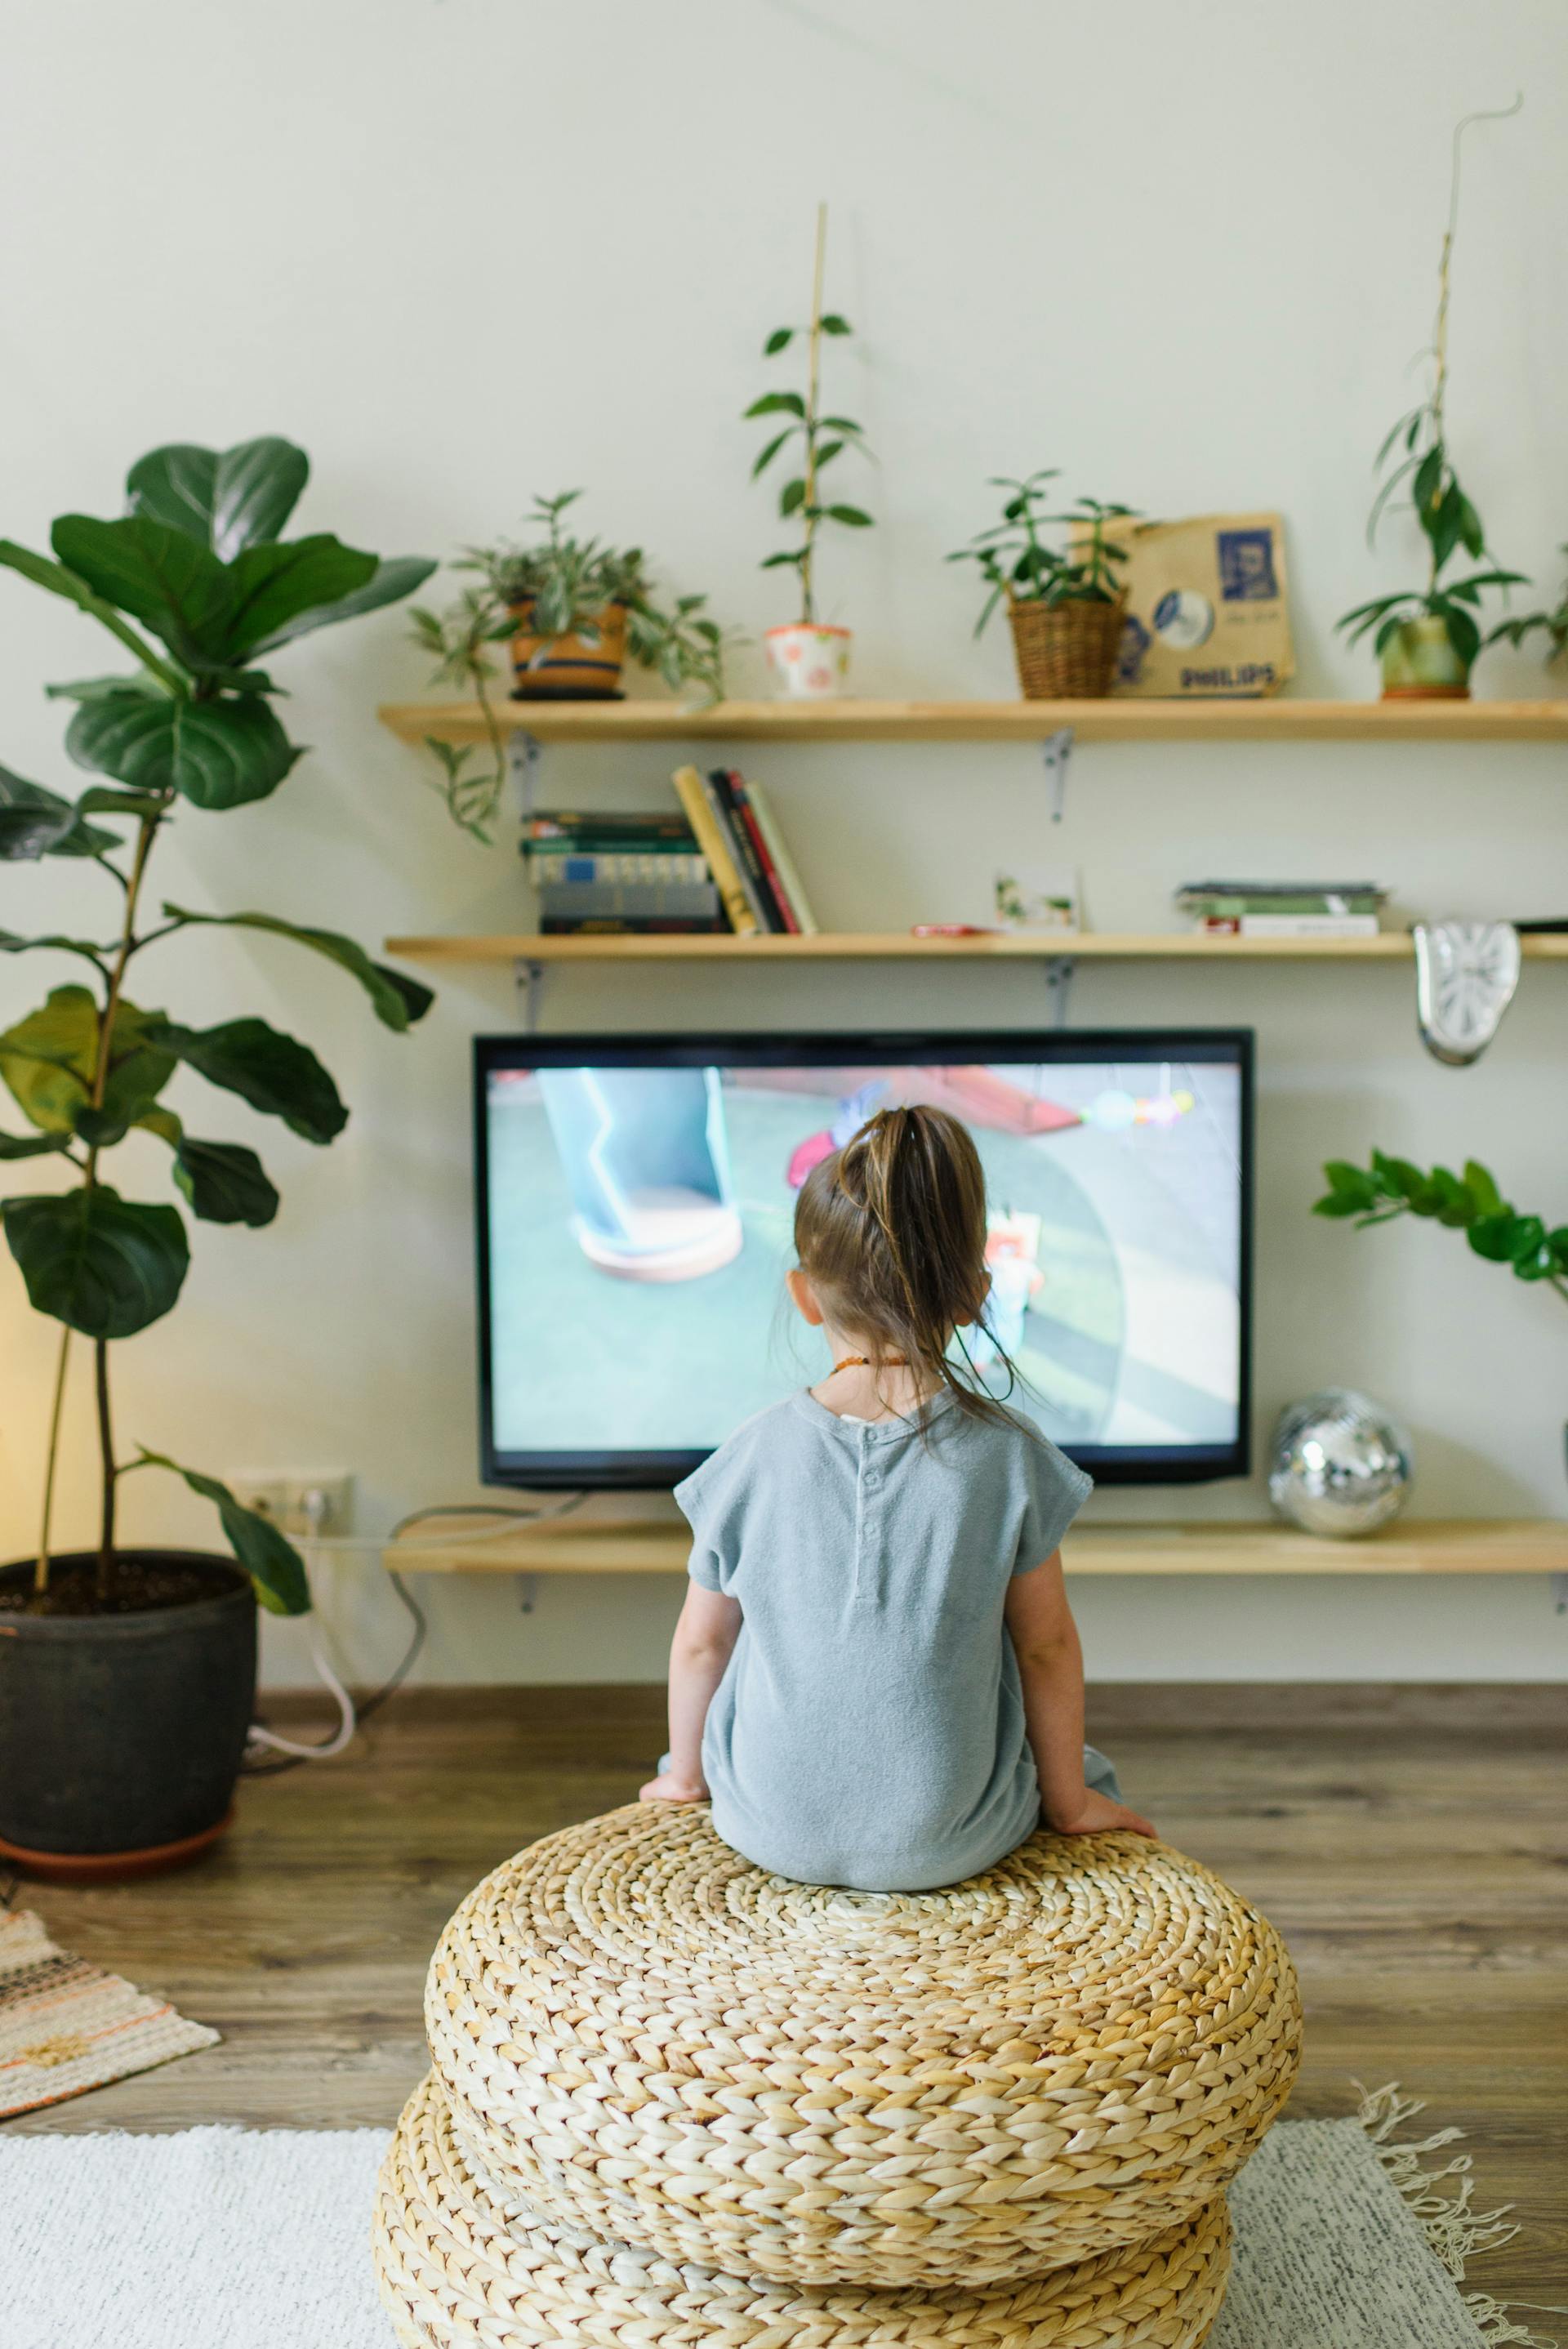 Un enfant qui regarde la télévision | Source : Pexels